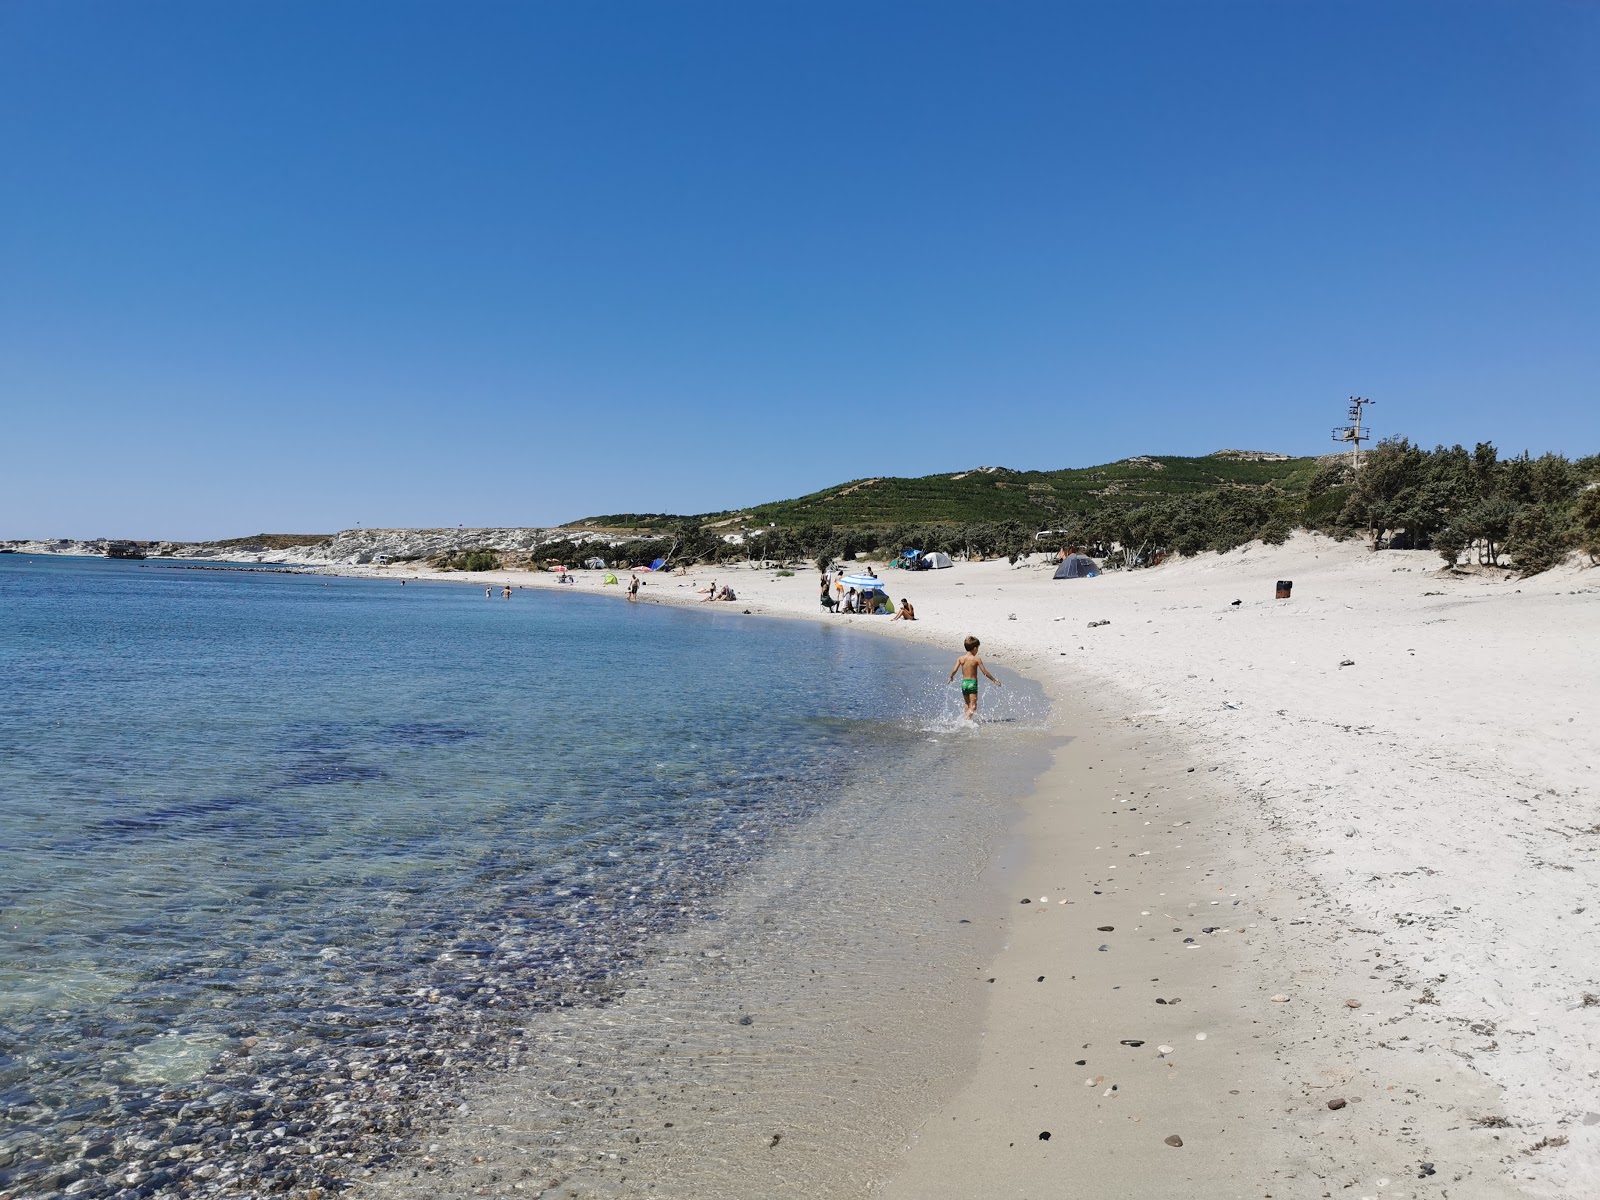 Gilikli Halk Plajı'in fotoğrafı çakıl ile kum yüzey ile